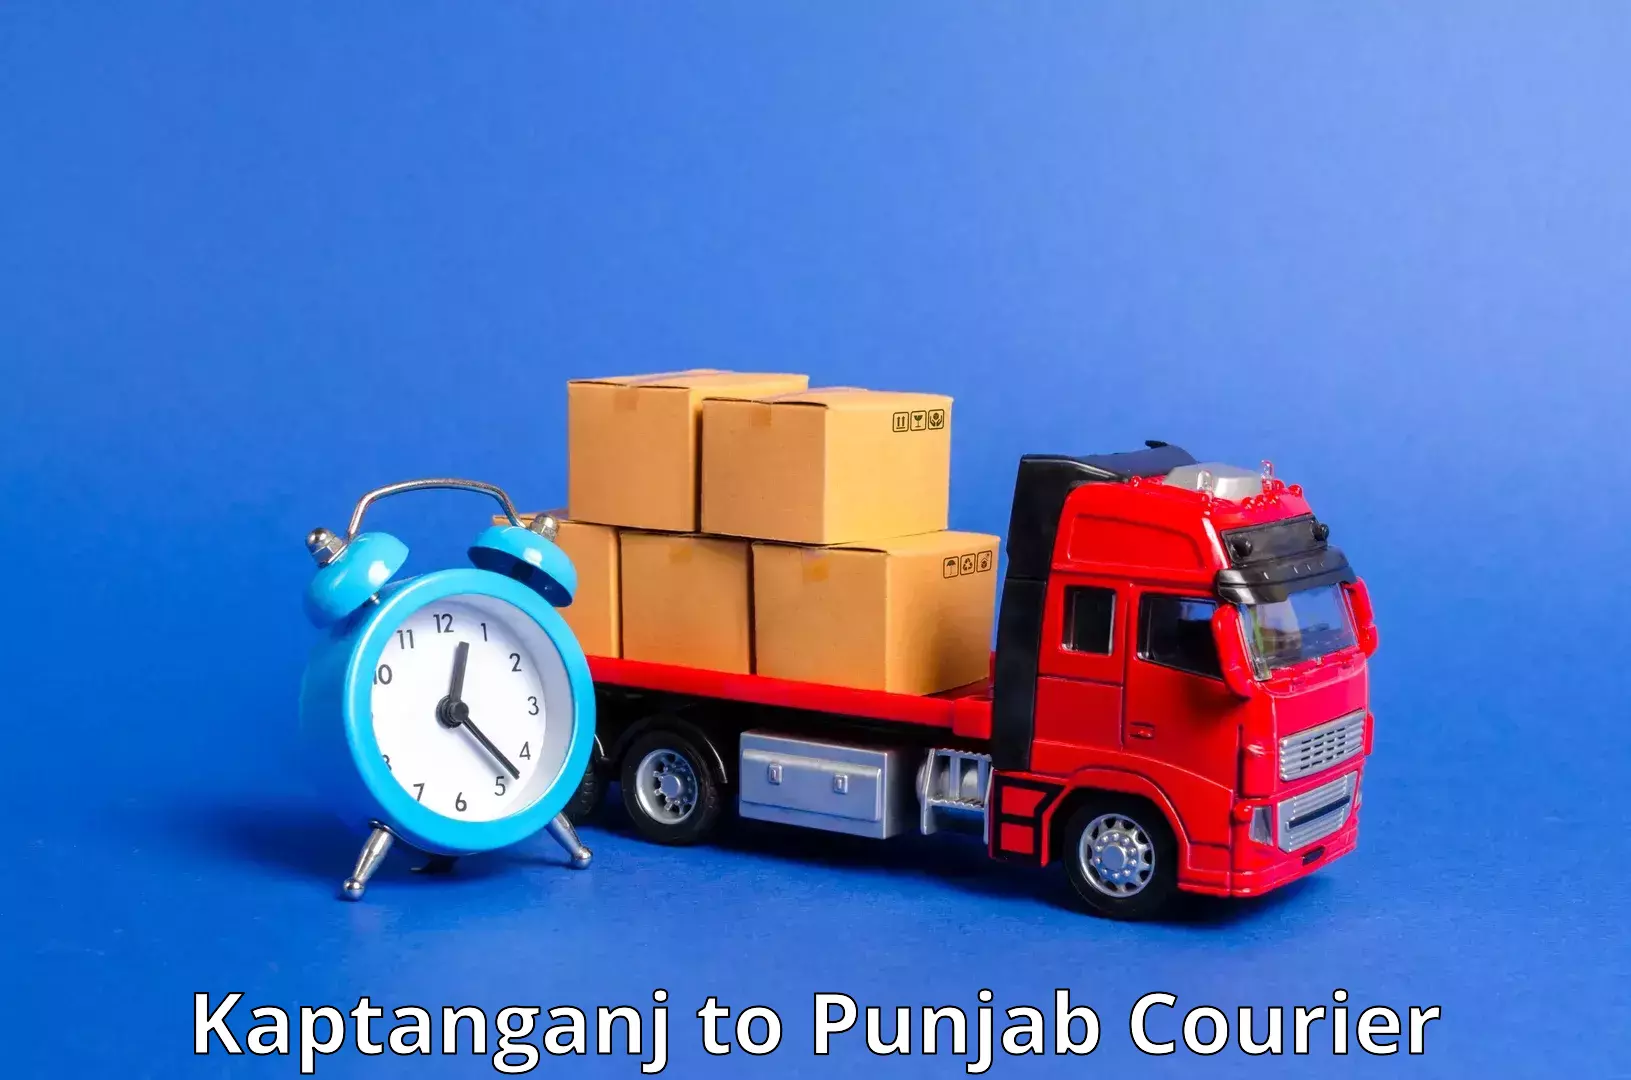 High-speed parcel service Kaptanganj to Rampura Phul